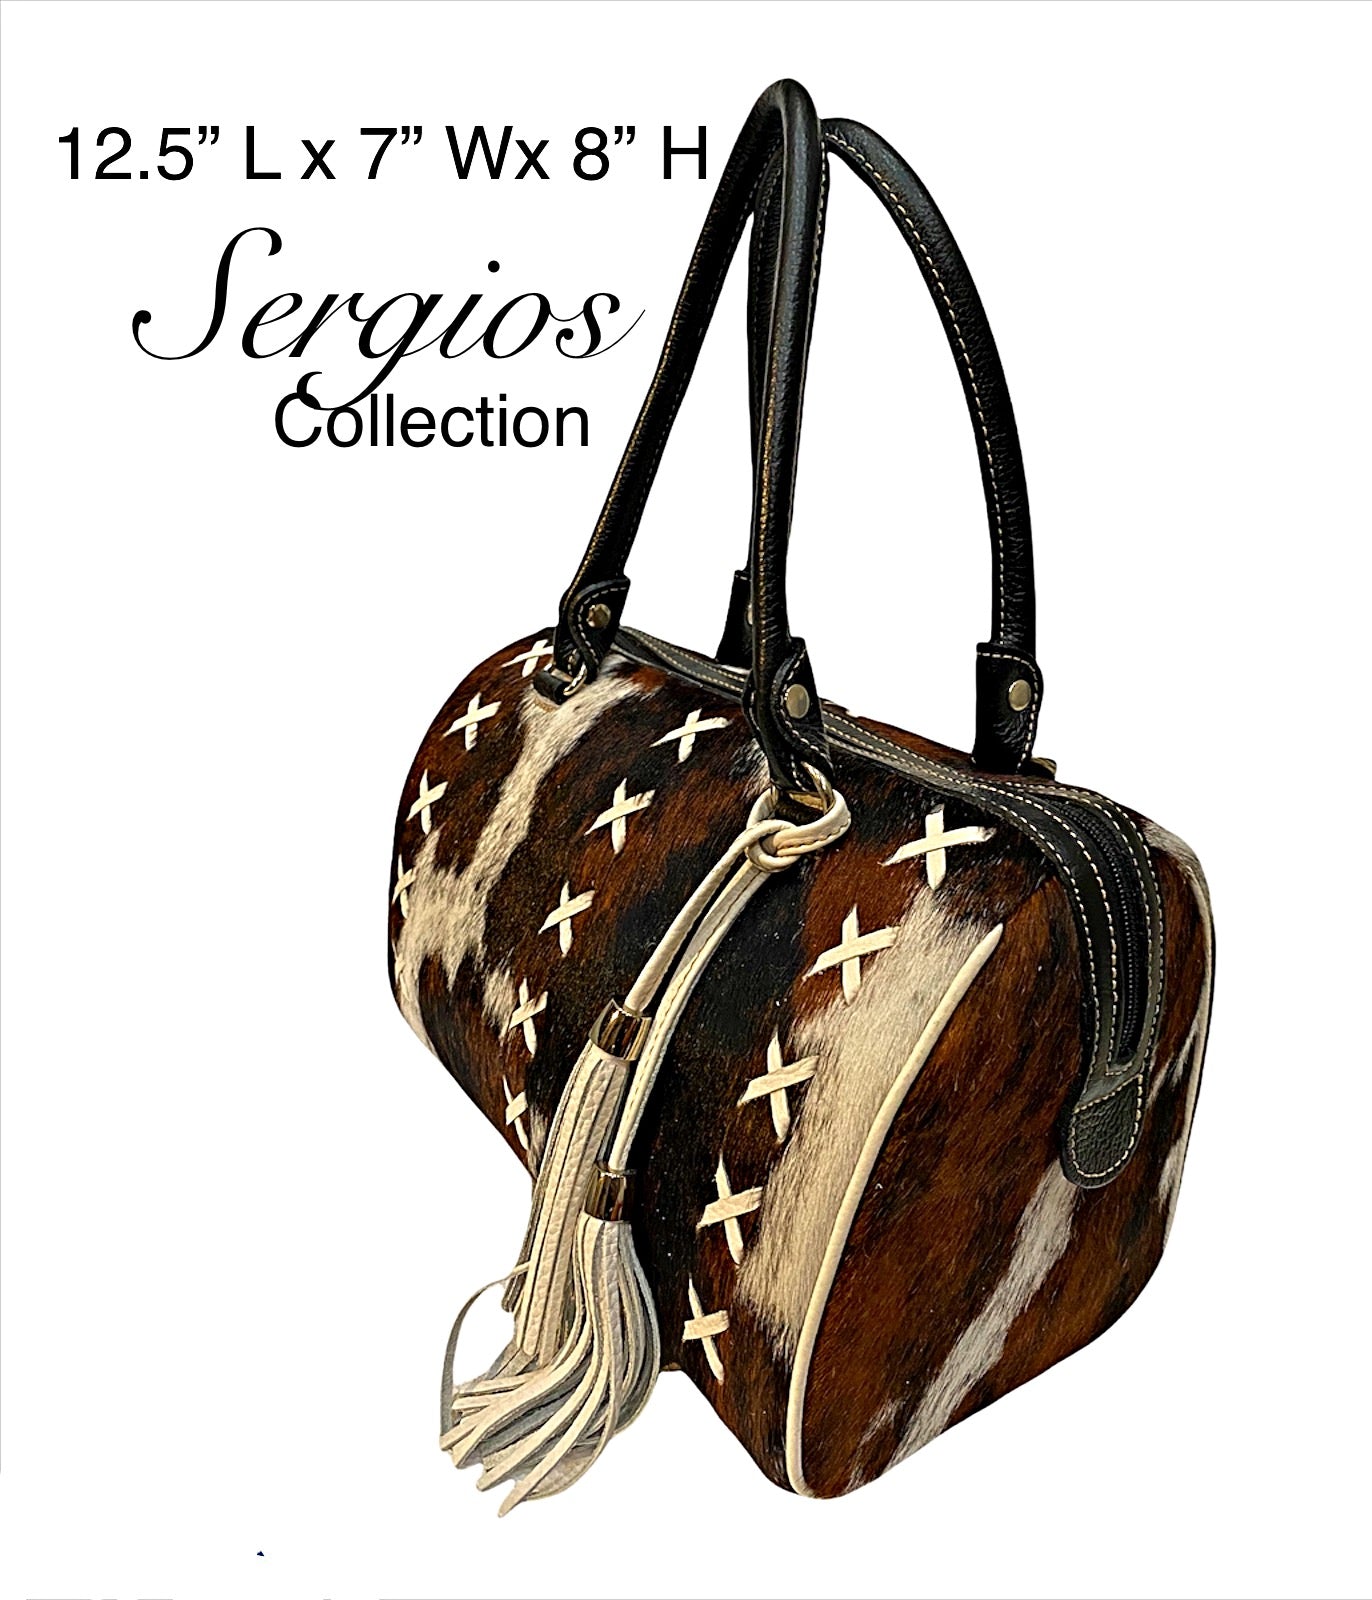 speedy style purse